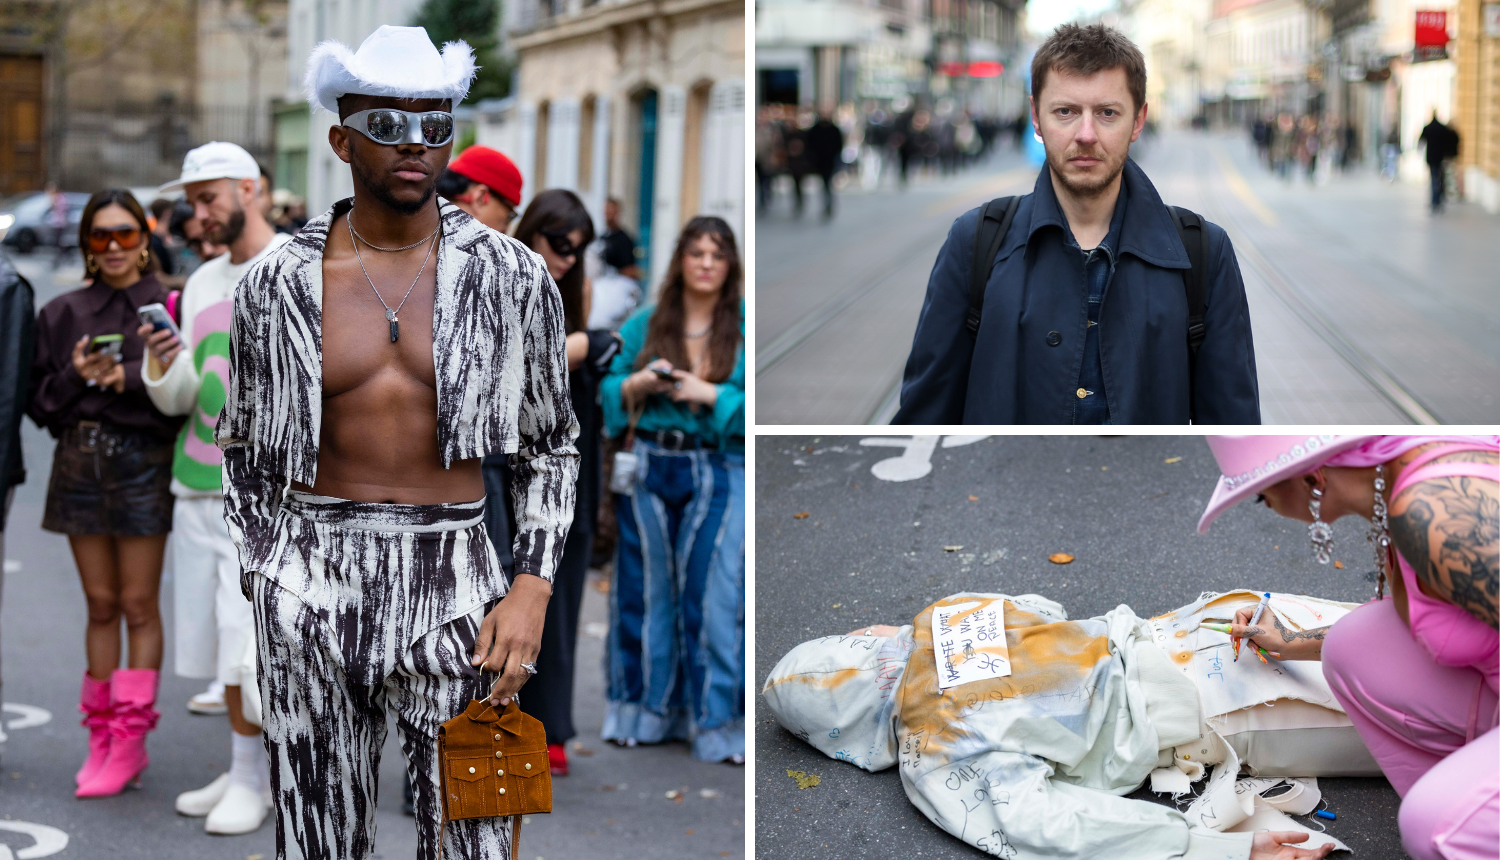 Ekskluzivno s Pariškog tjedna mode: 'Muškarci nose žensku robu, sve je manje elegancije'